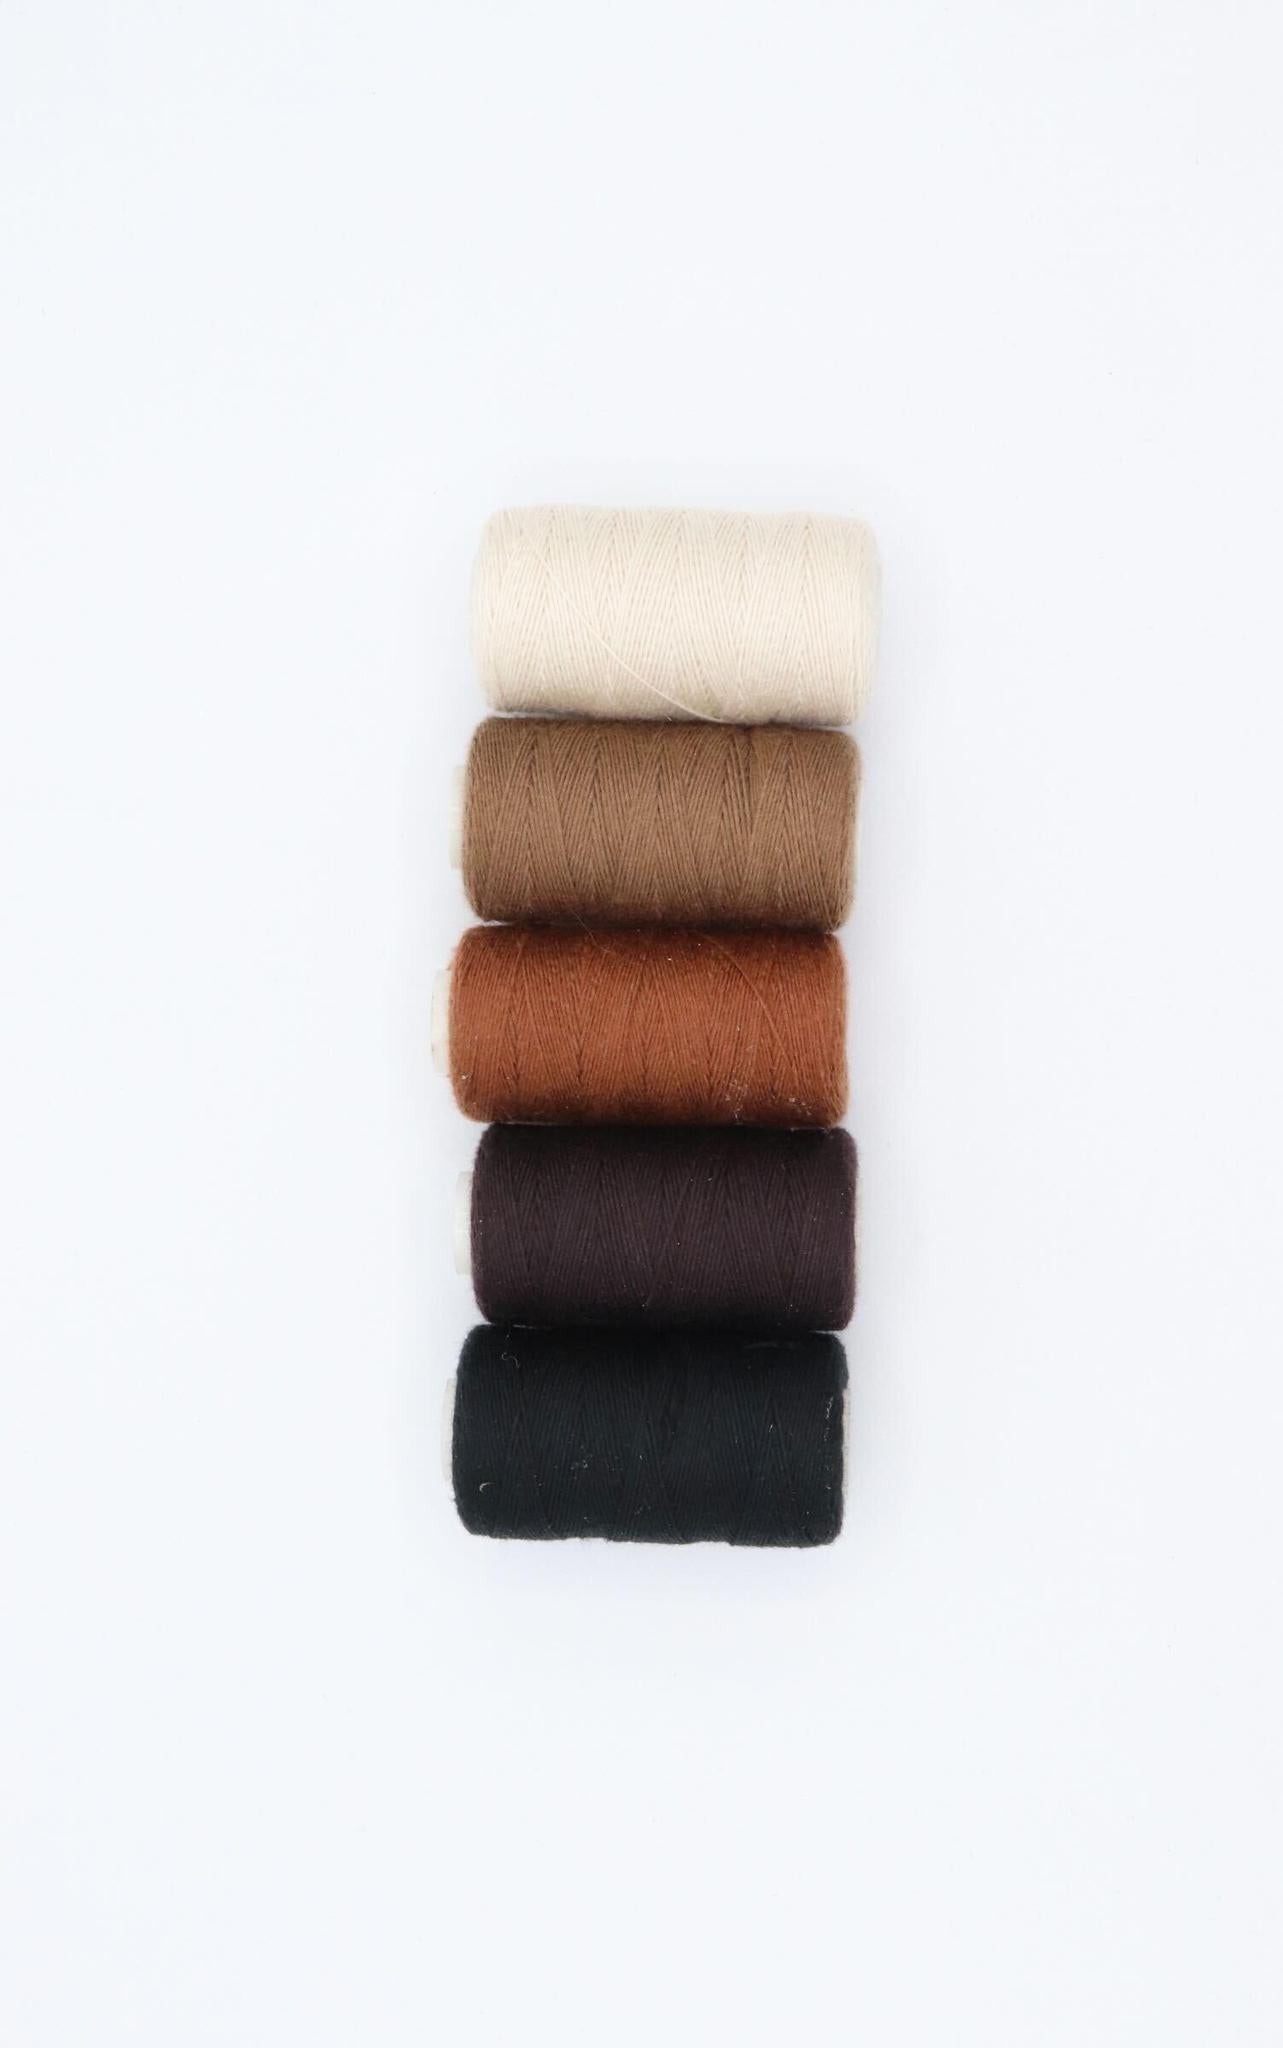 Laced Hair Mini Cotton Weaving Thread